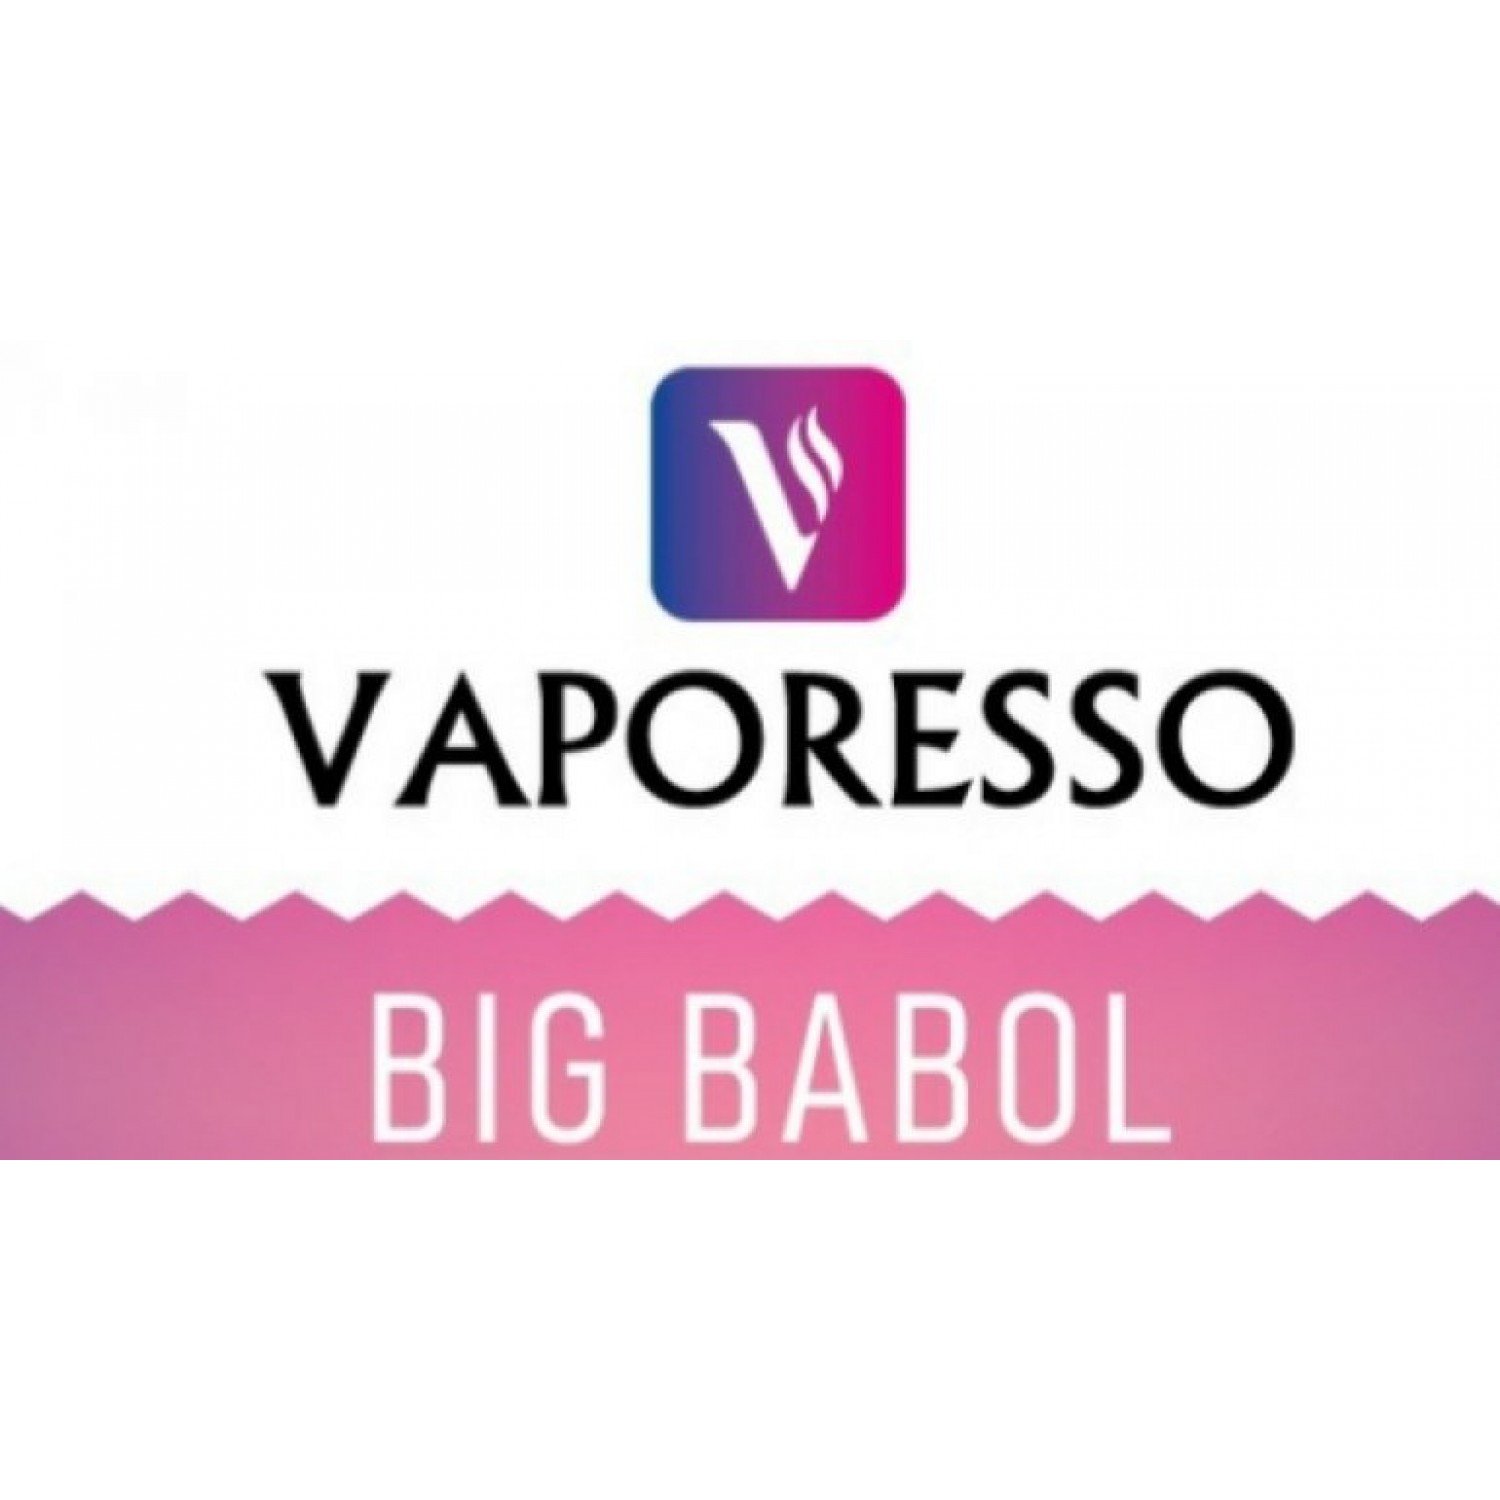 Vaporesso - Big Babol 30 ml Elektronik Sigara Likiti